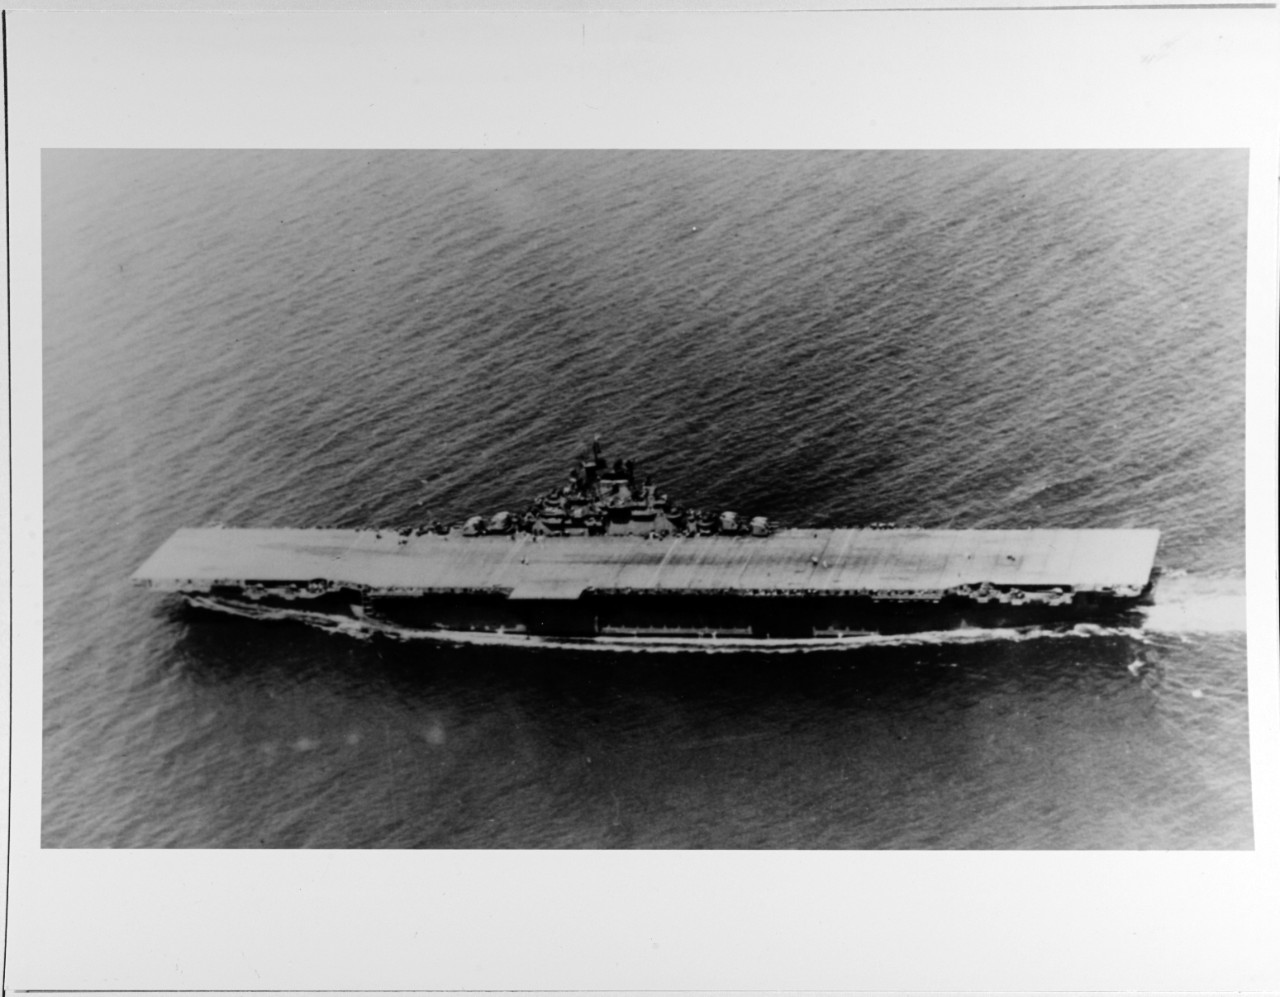 USS BUNKER HILL (CVE-17)